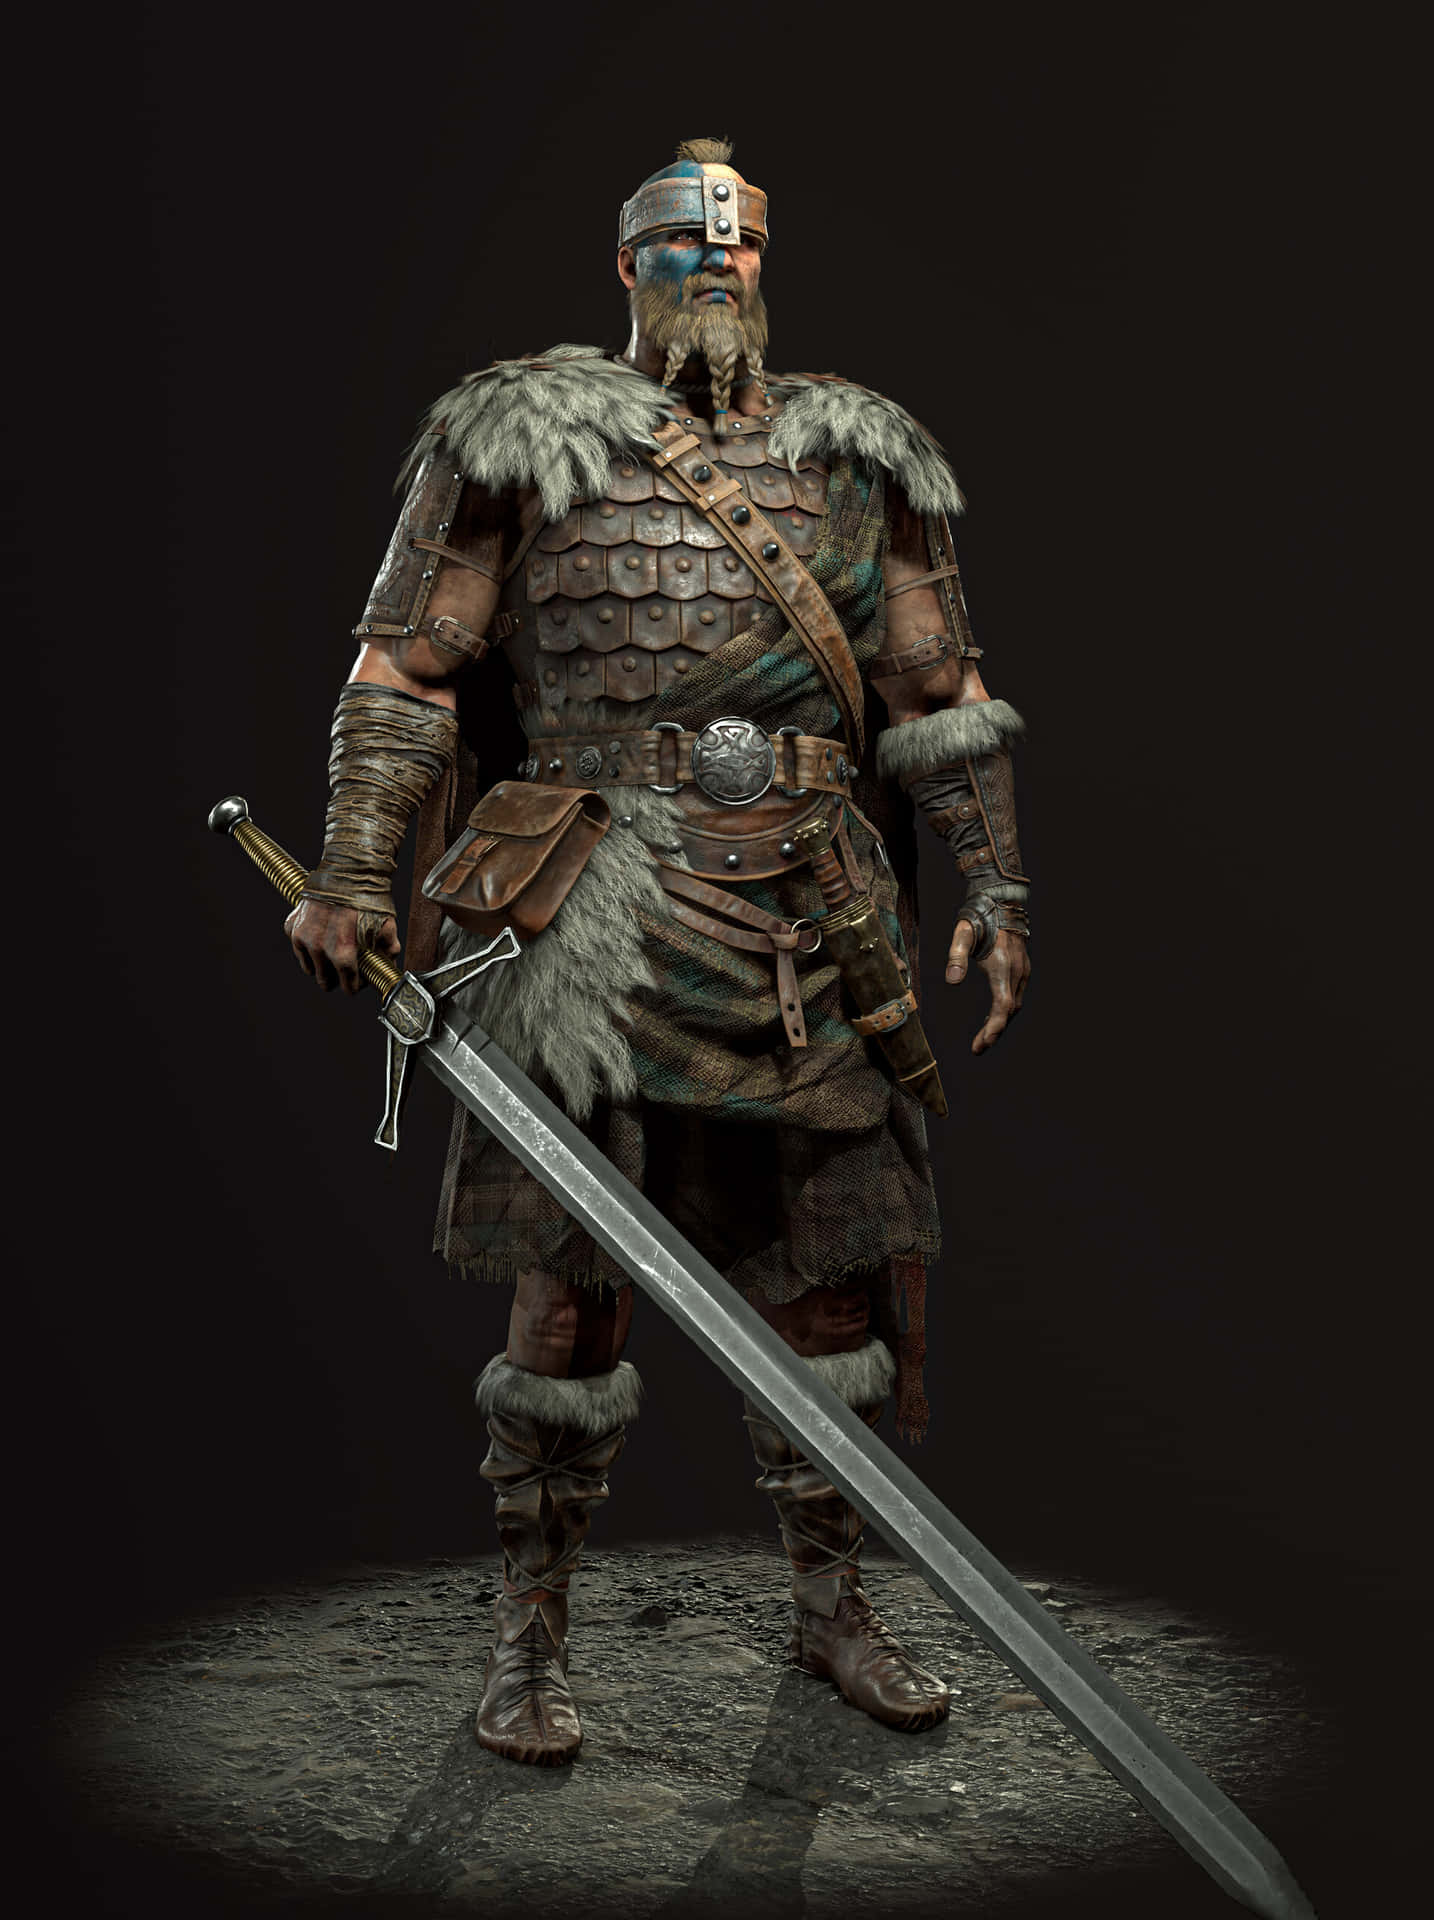 A true Highlander Warrior - For Honor Wallpaper